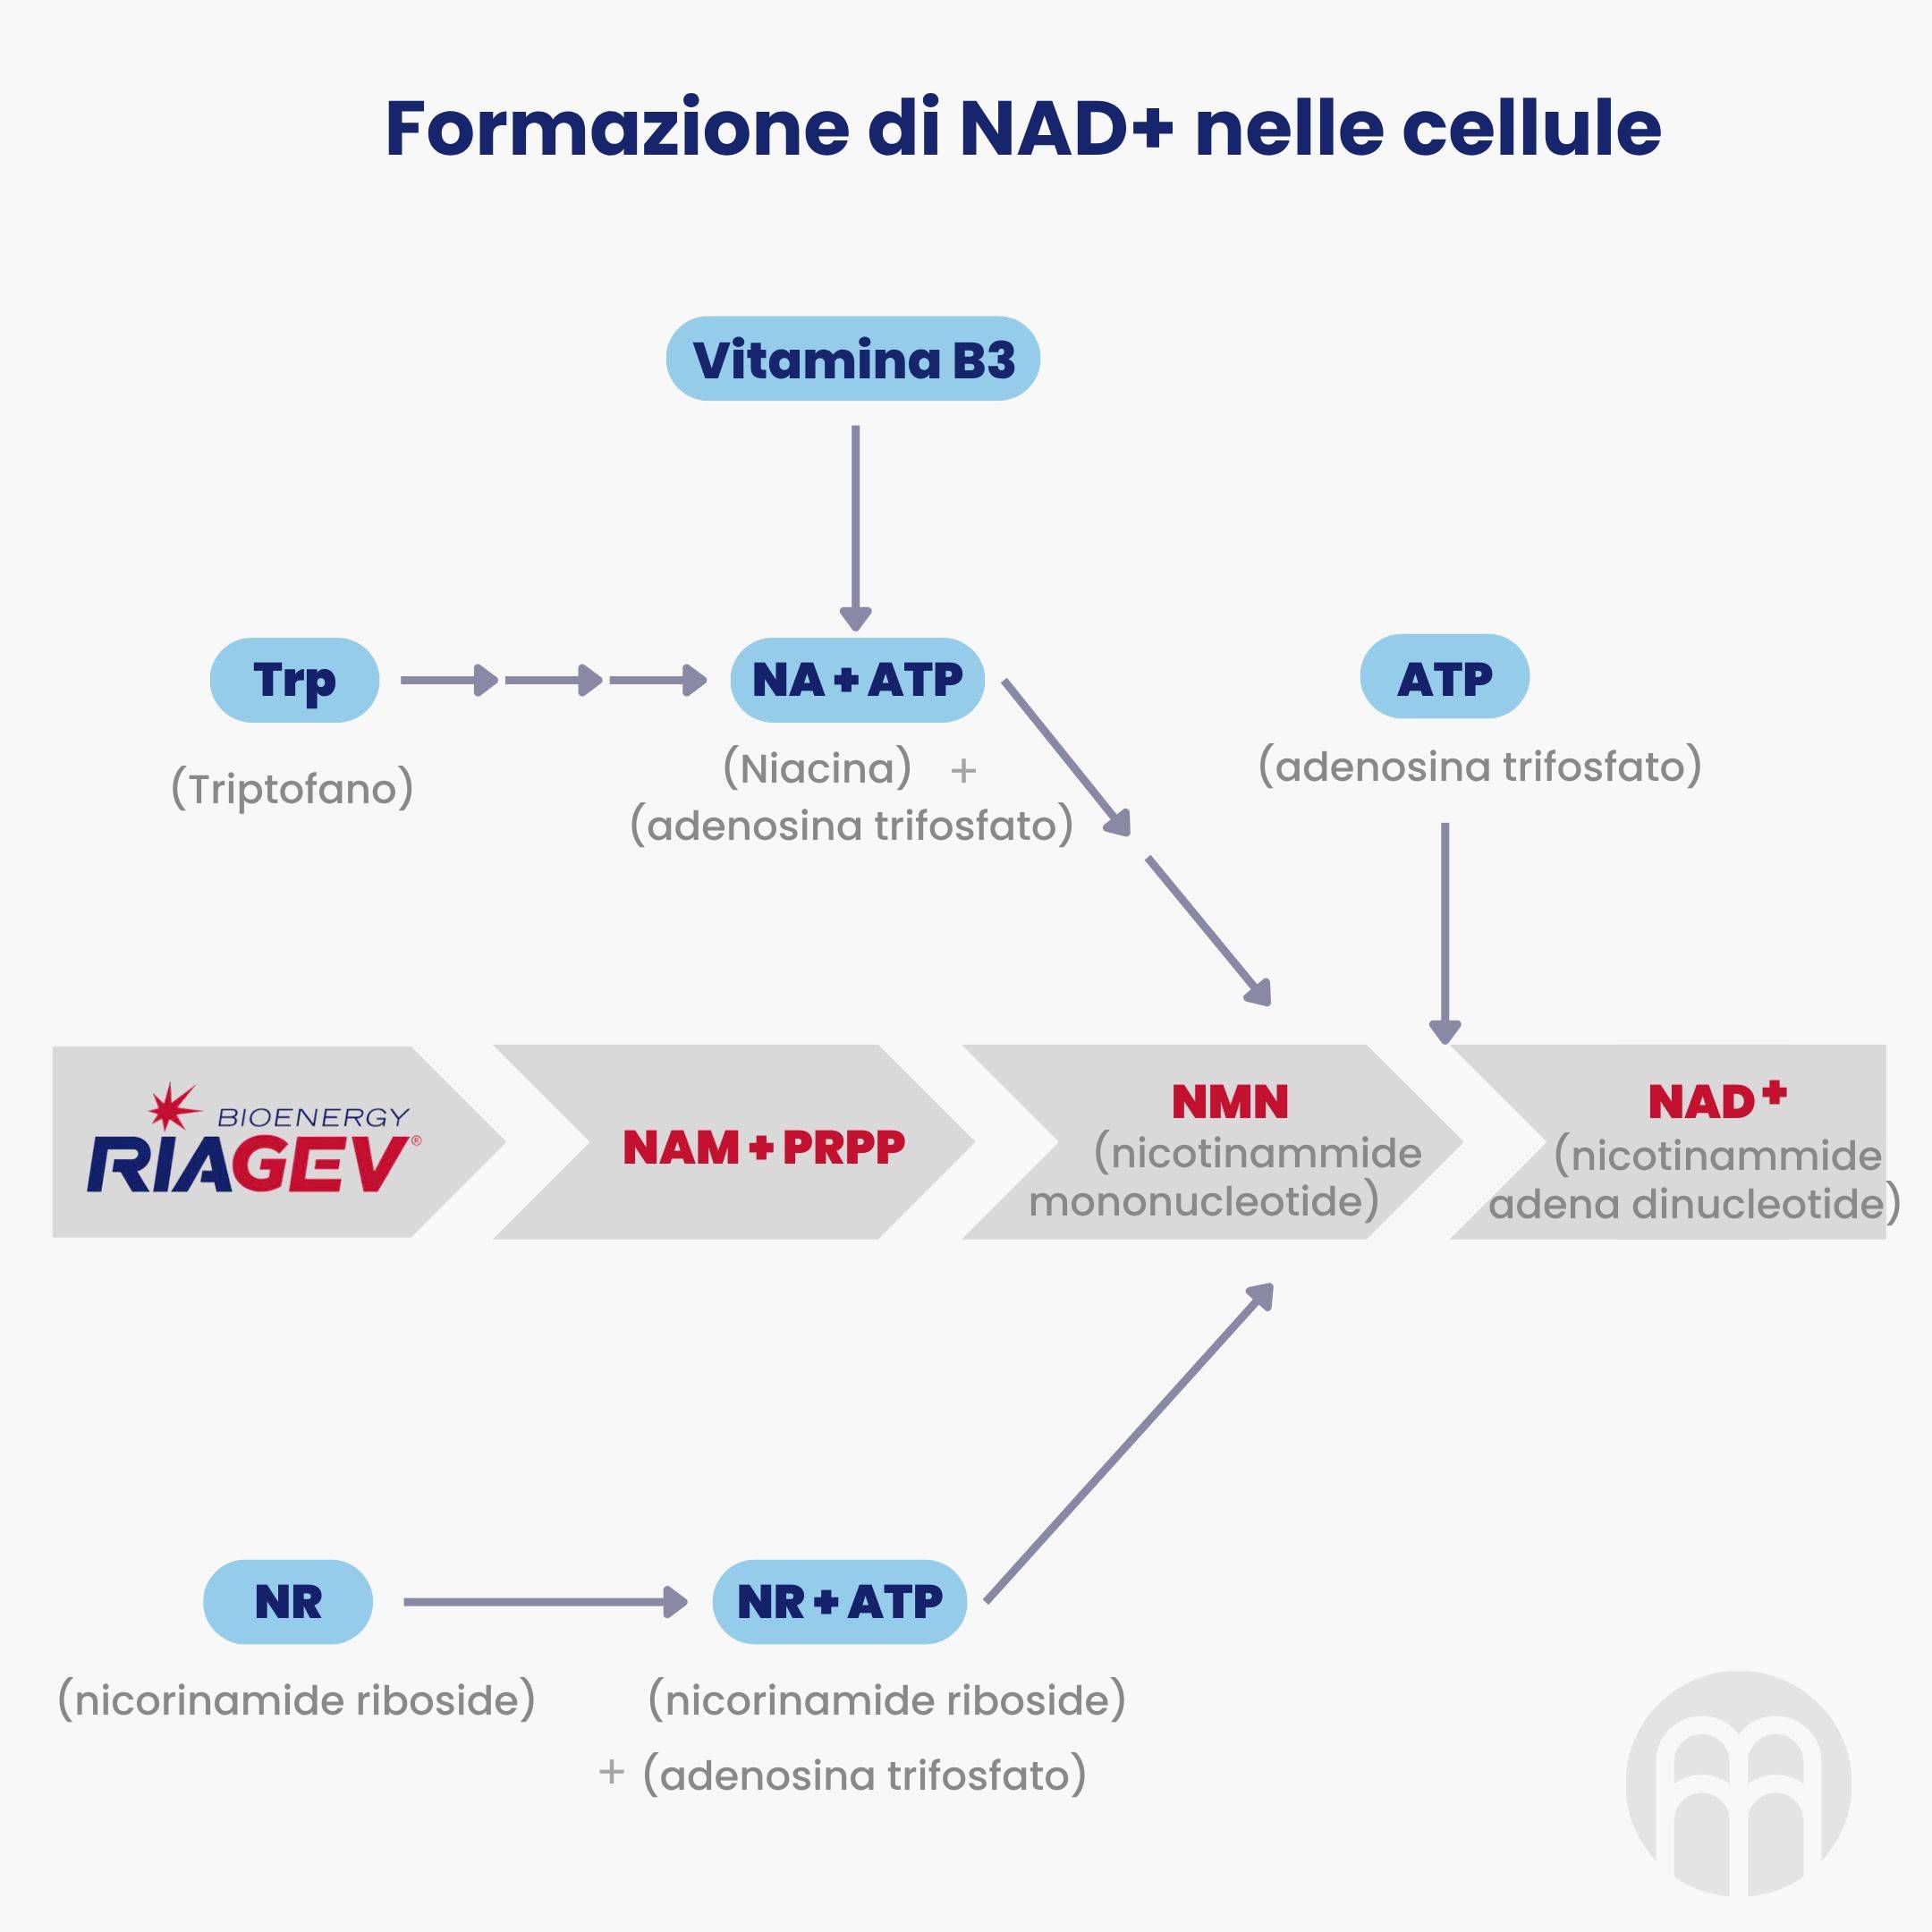 Formazione di NAD+ nelle cellule